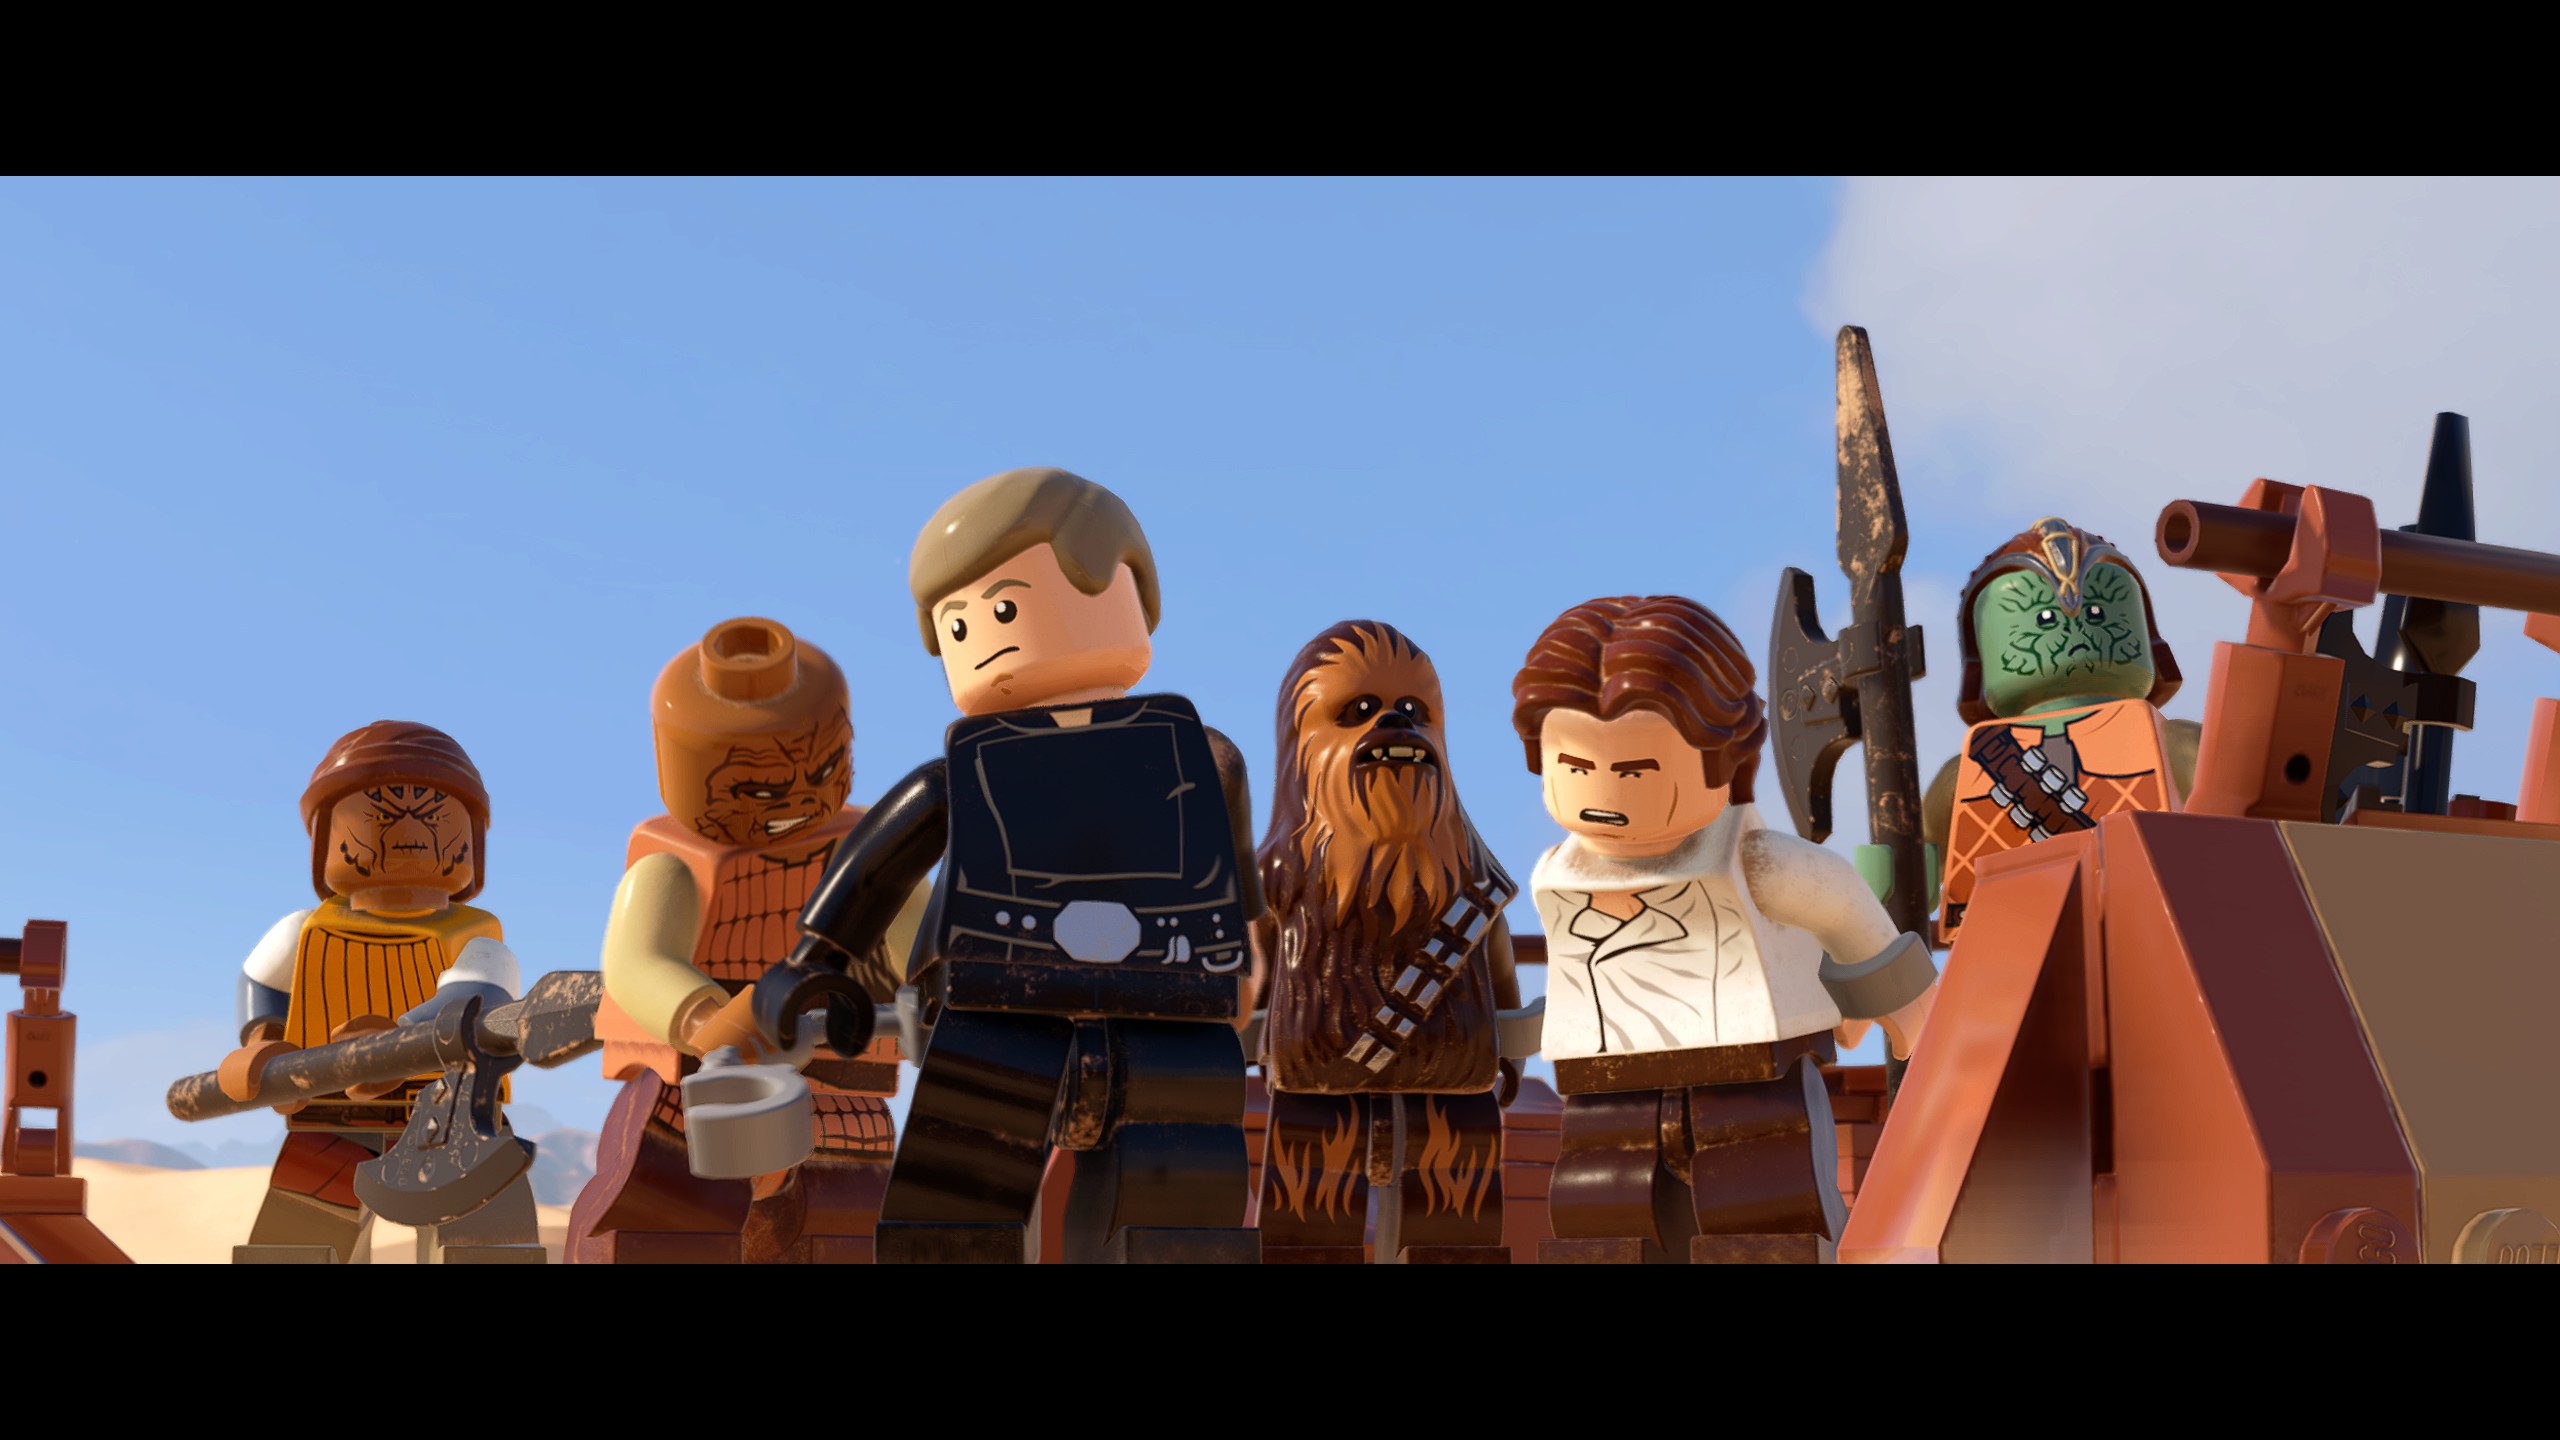 General 2560x1440 Star Wars LEGO Star Wars LEGO TV